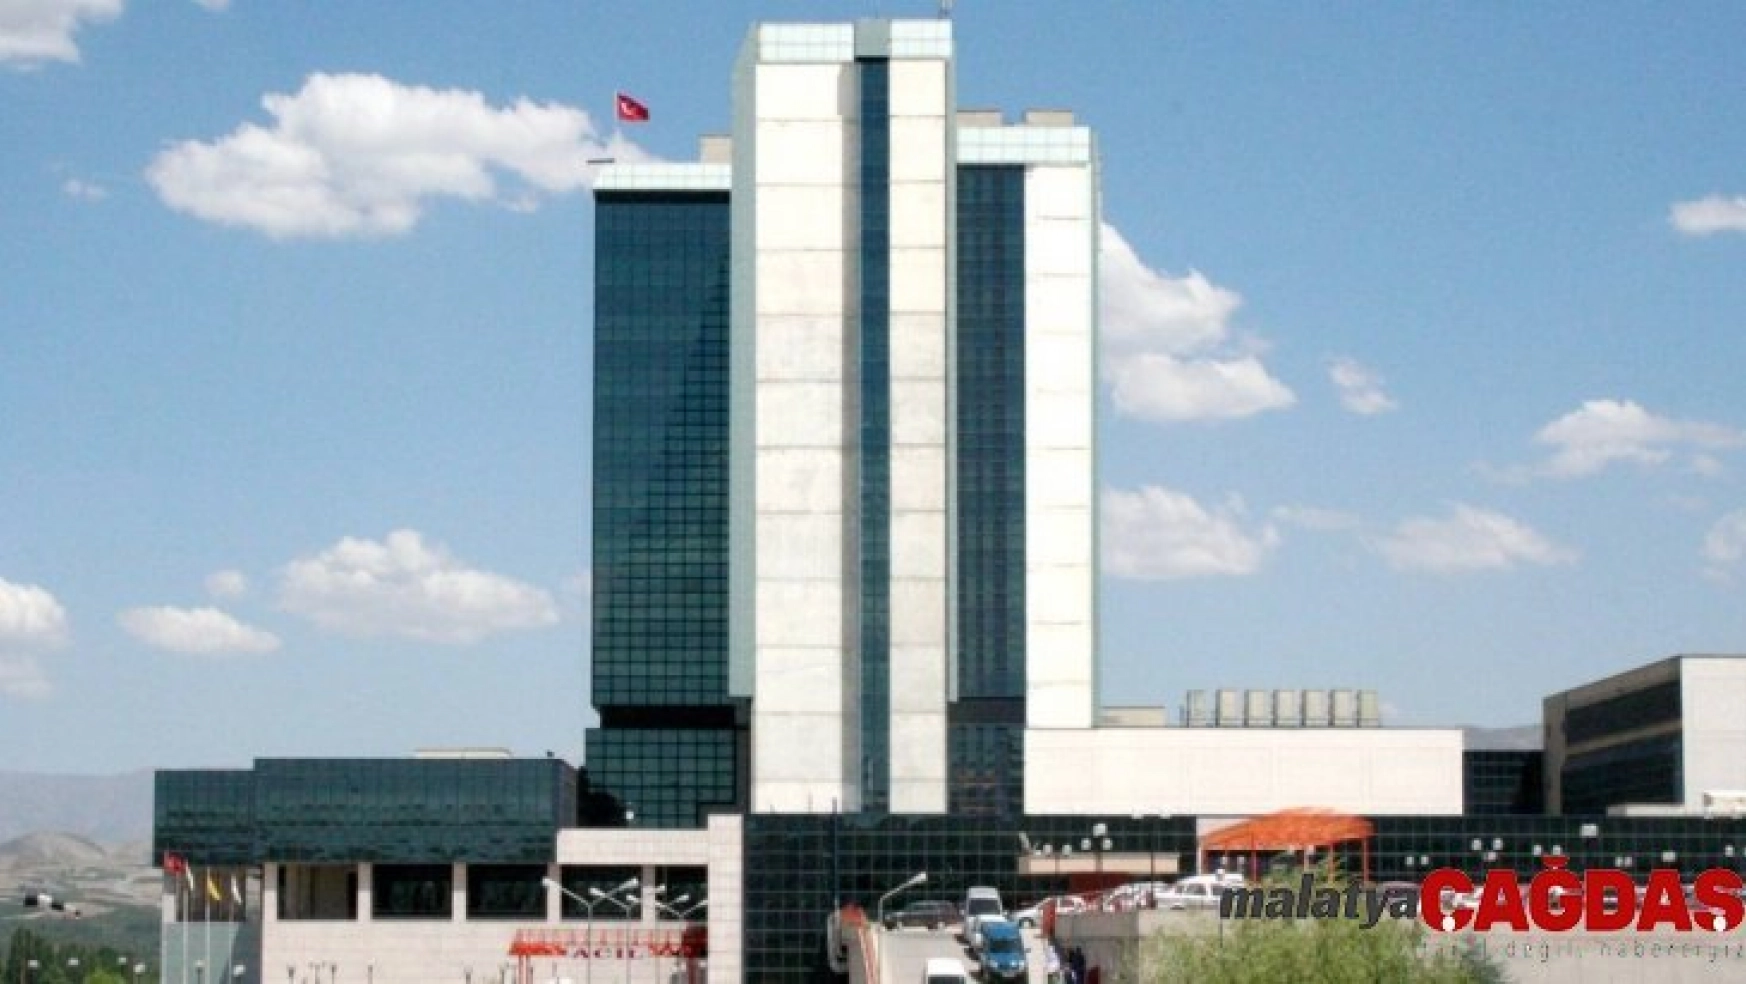 Turgut Özal Tıp Merkezi, 2019'u başarılarla geçirdi